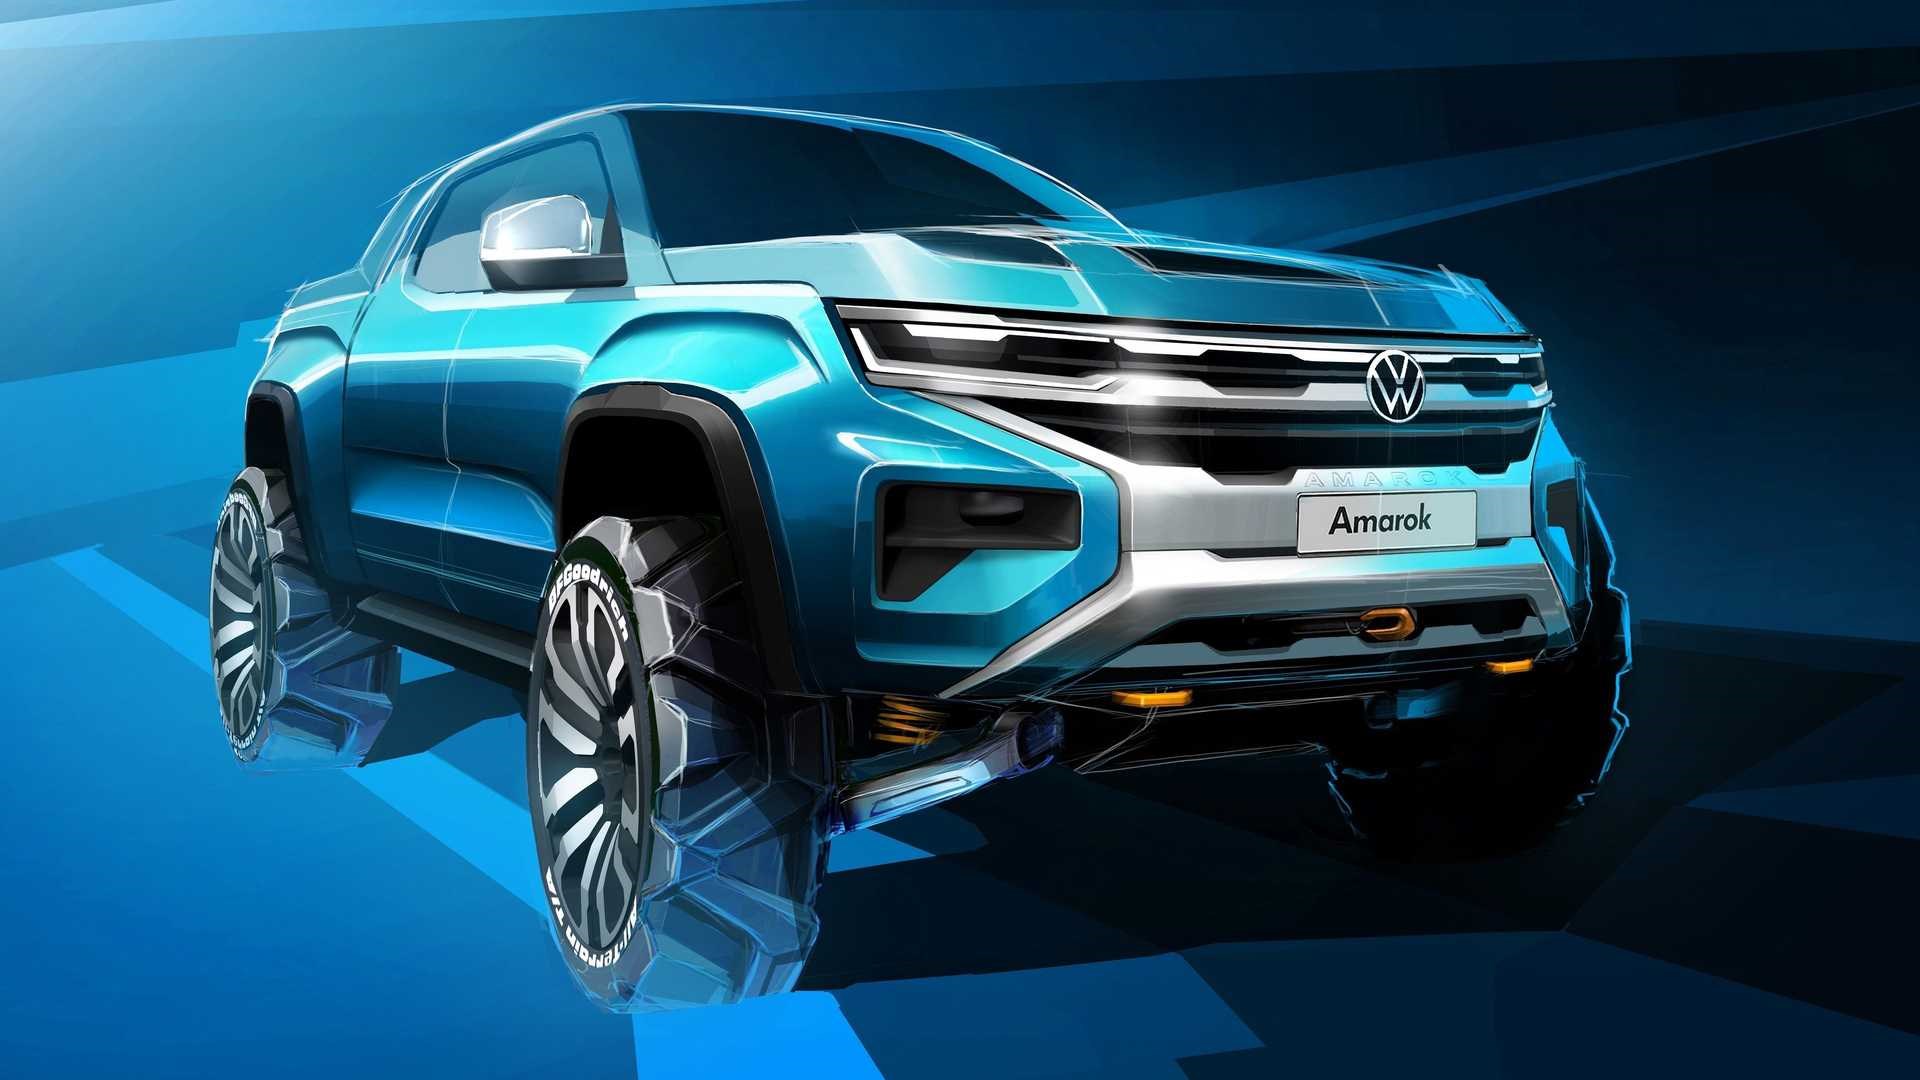 Yeni nesil Volkswagen Amarok'un tasarımı yavaş yavaş açığa çıkıyor: İşte yeni teaser